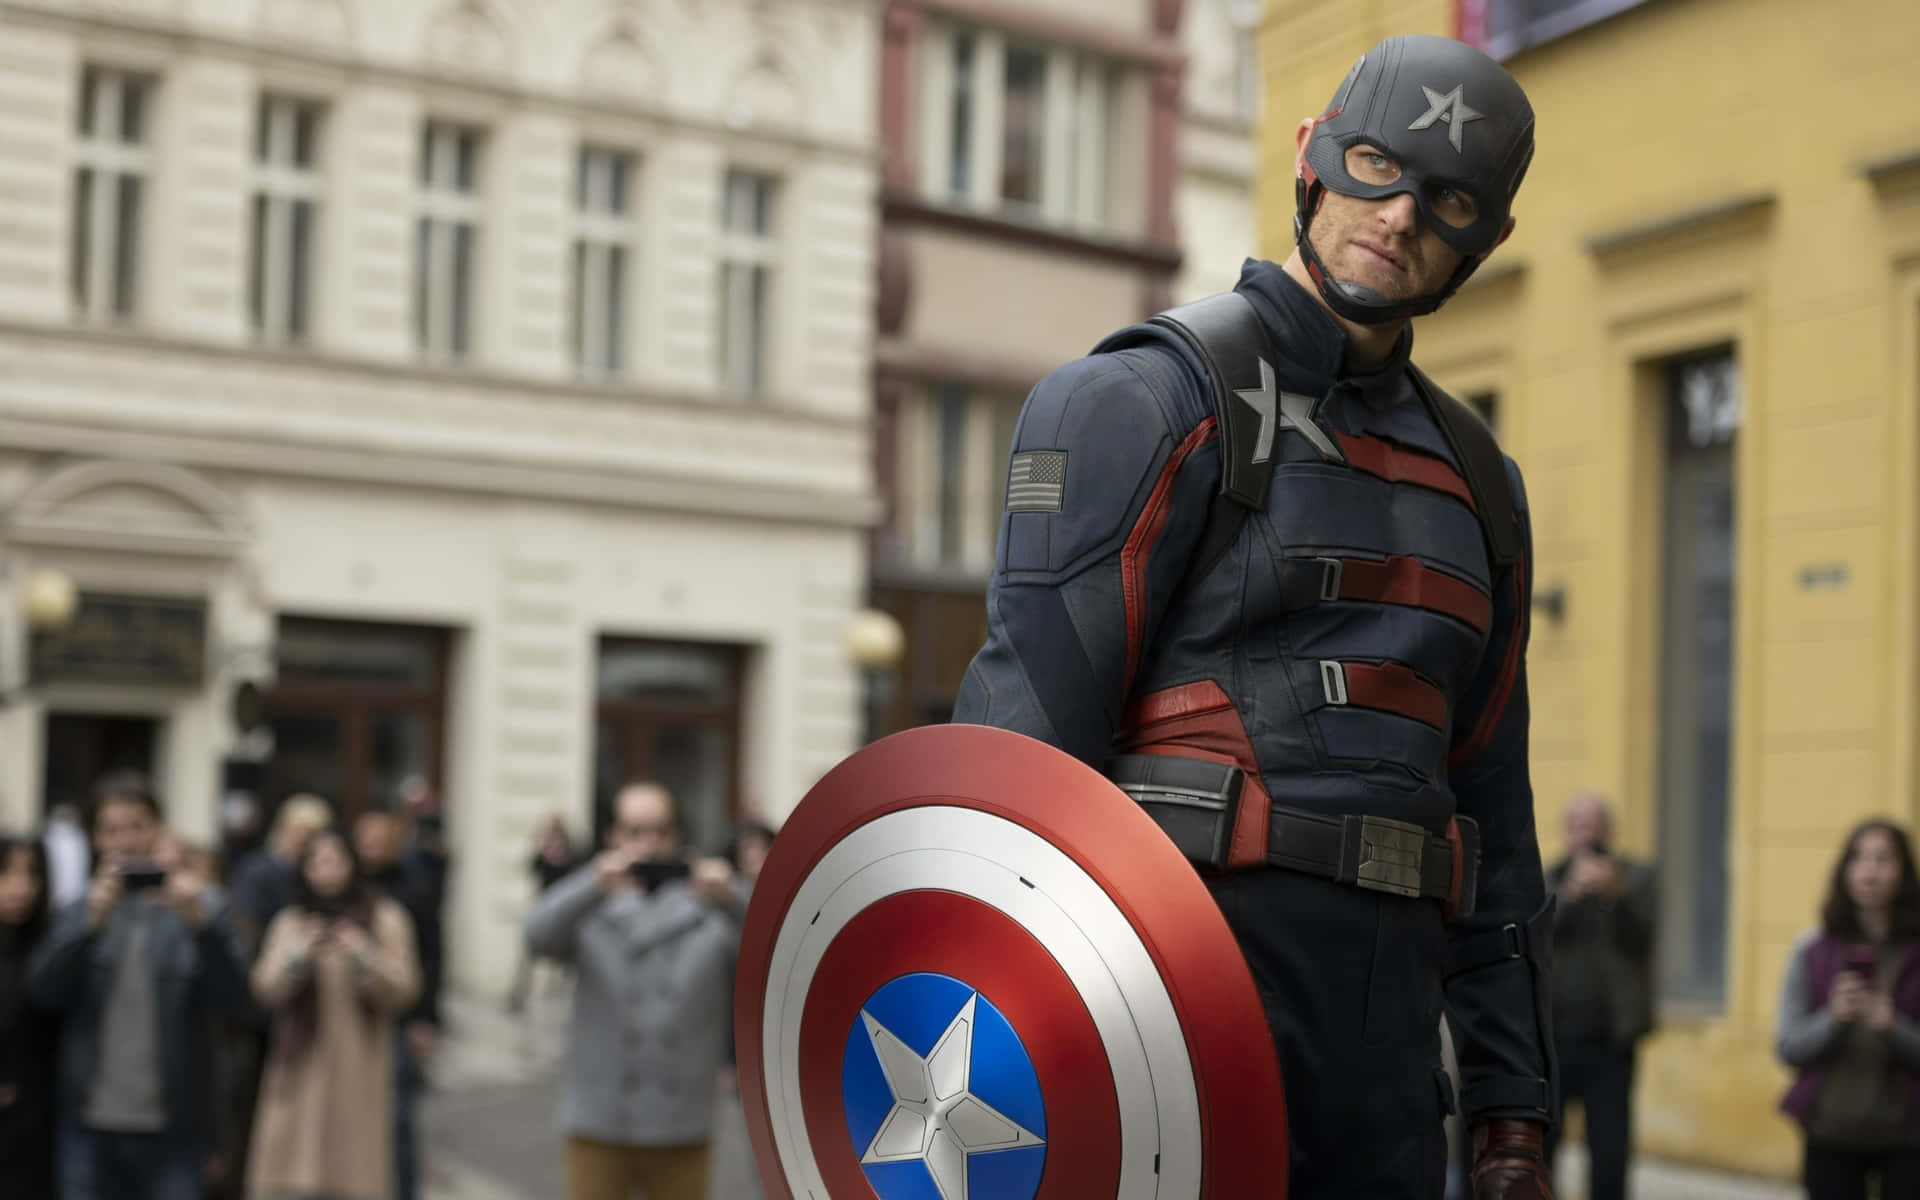 Marvelshjältemod På Sitt Bästa - Captain America: The First Avenger Wallpaper